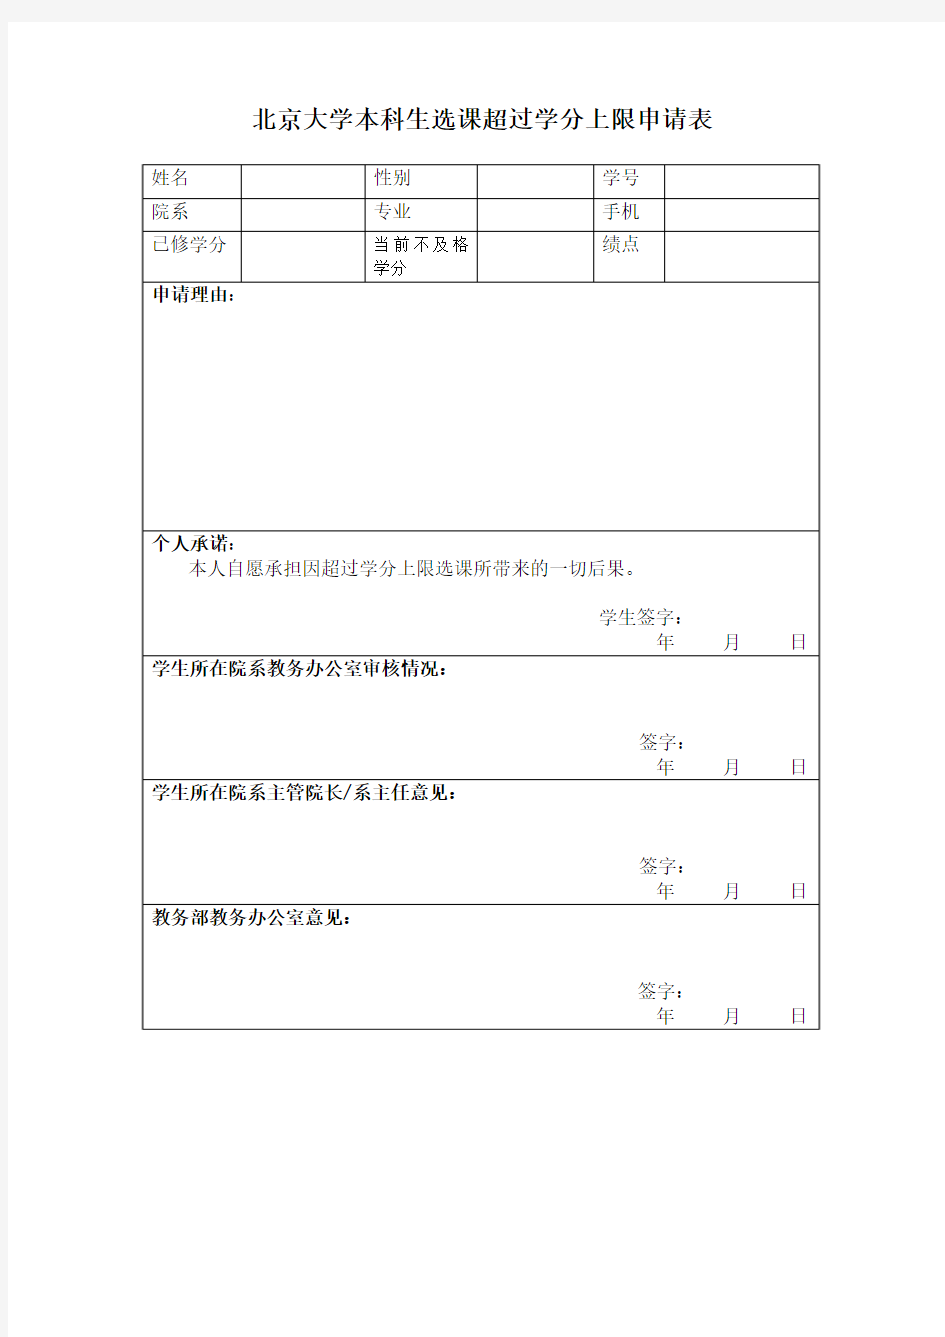 20150226北京大学本科生选课超过学分上限申请表